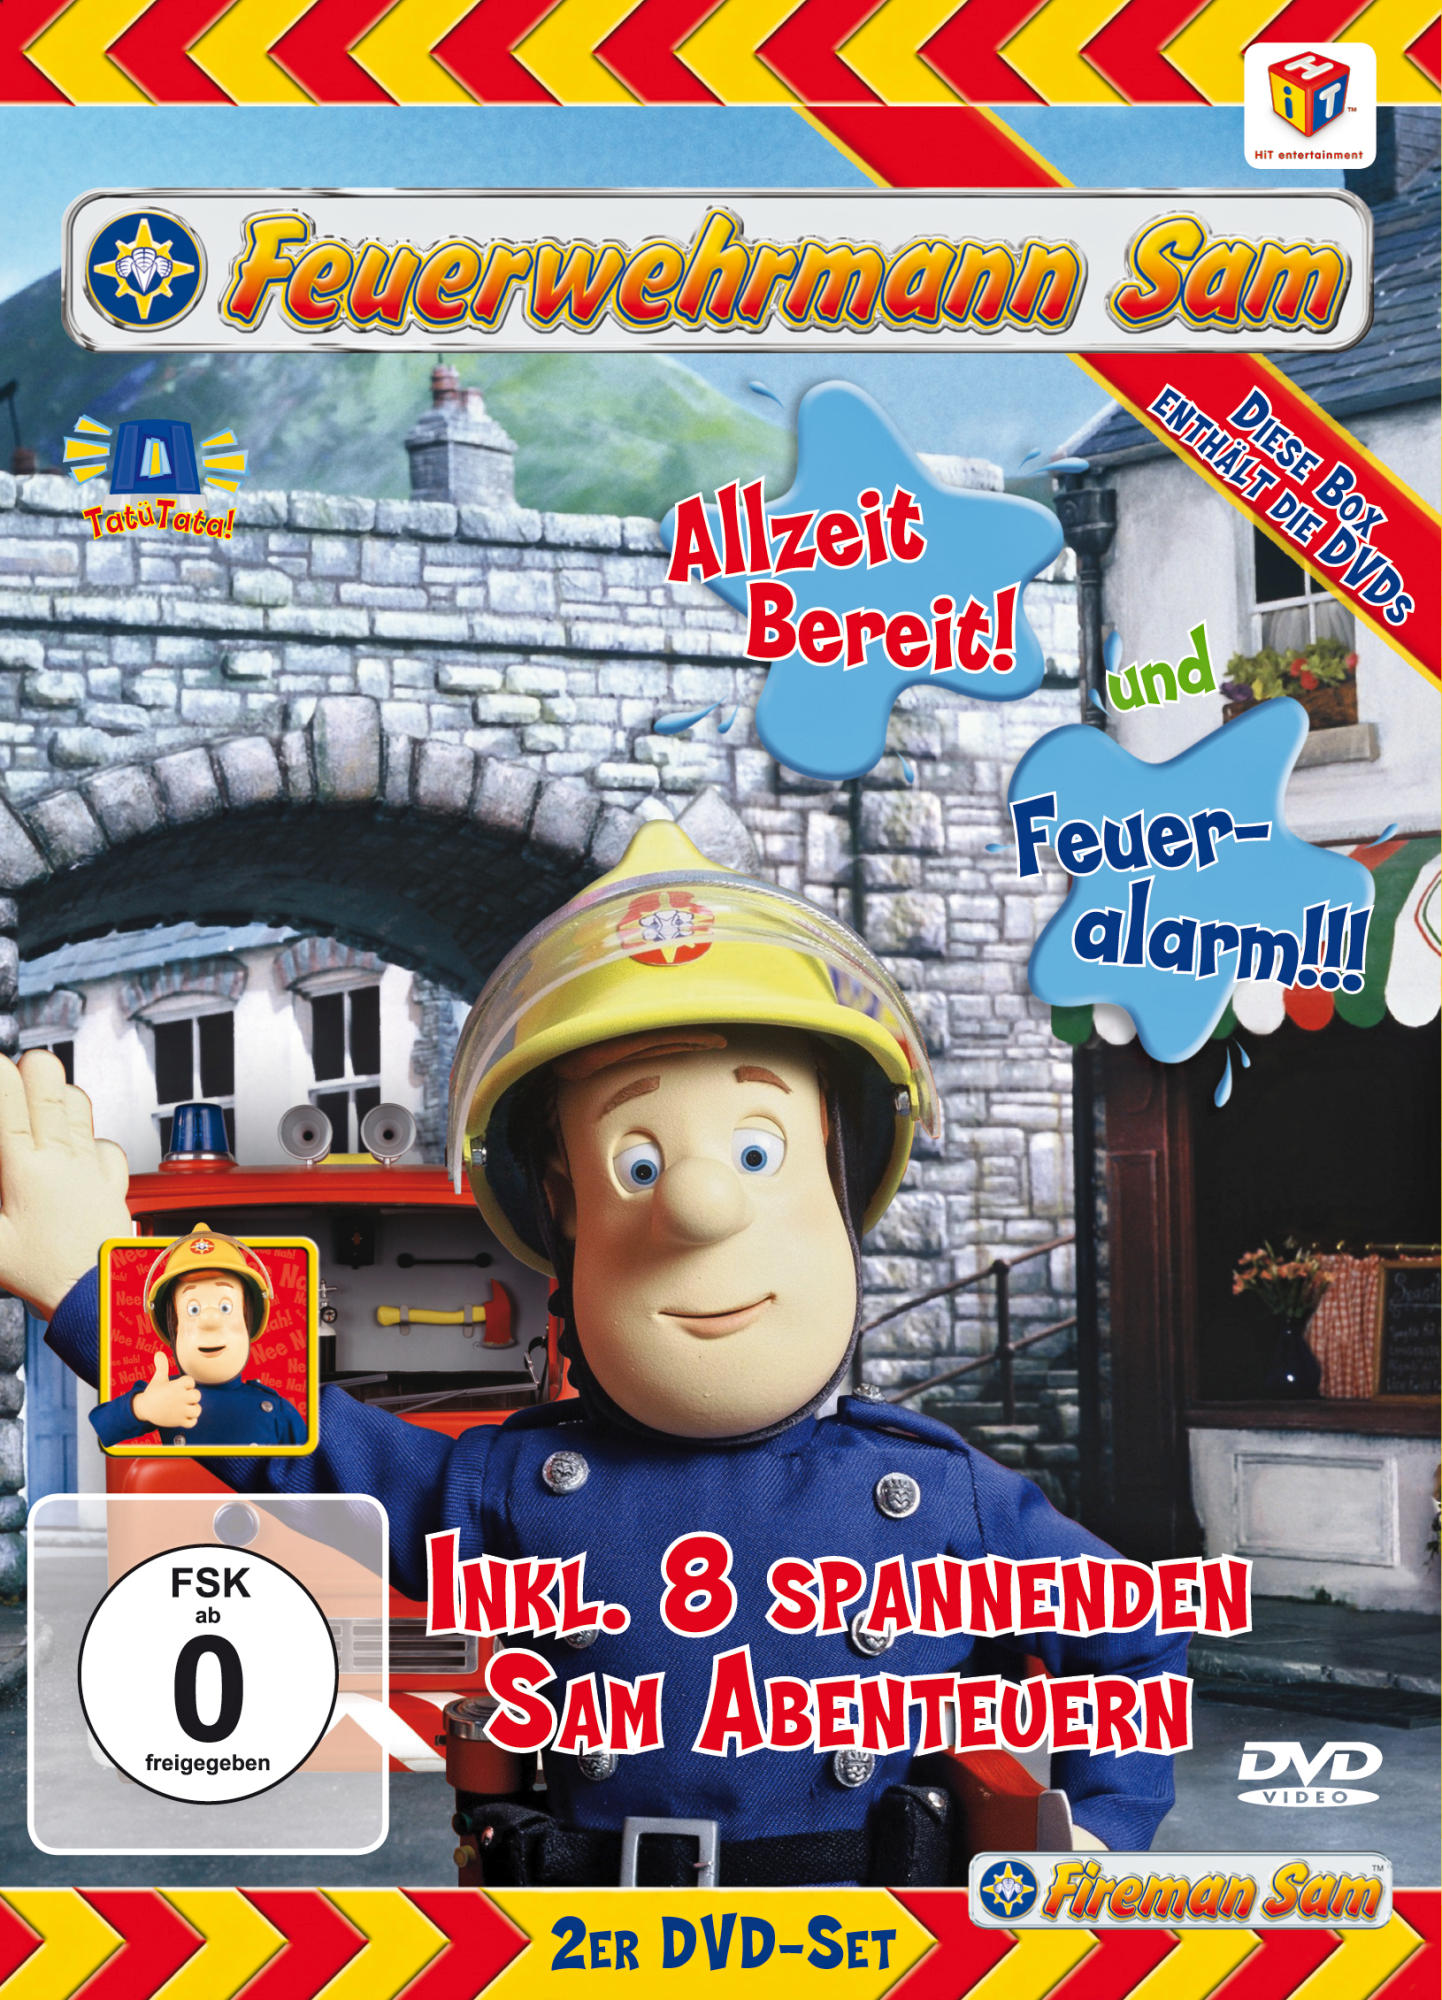 Feuerwehrmann Sam - Allzeit DVD bereit! / Feueralarm